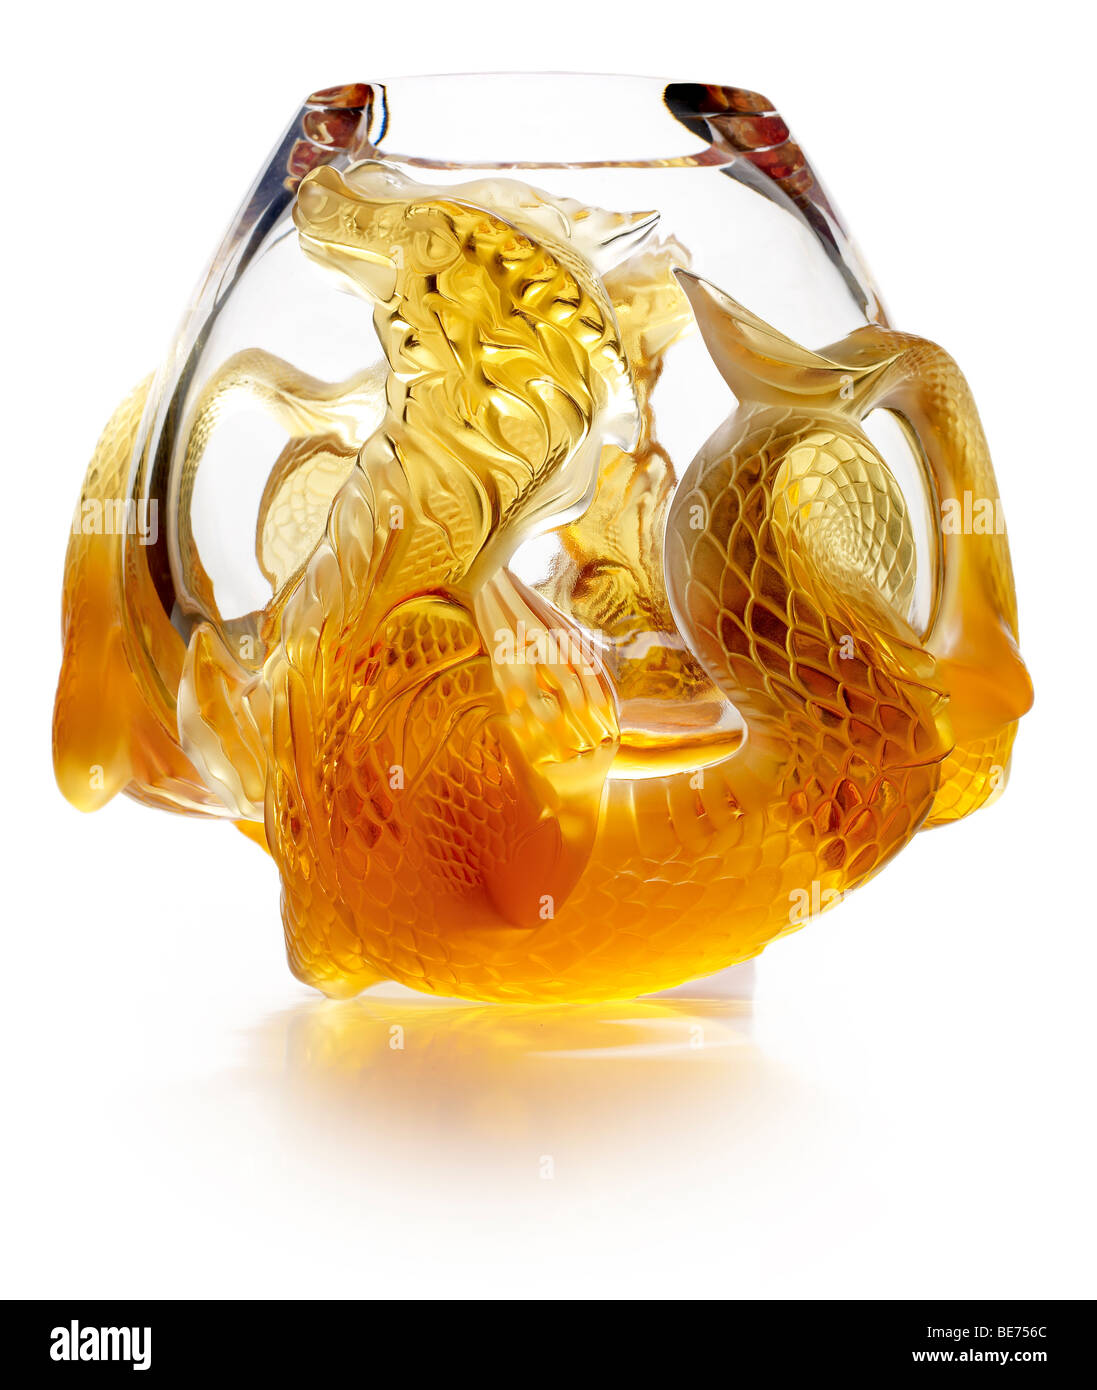 Lalique Goldfish Bowl - Porcelain Gallery